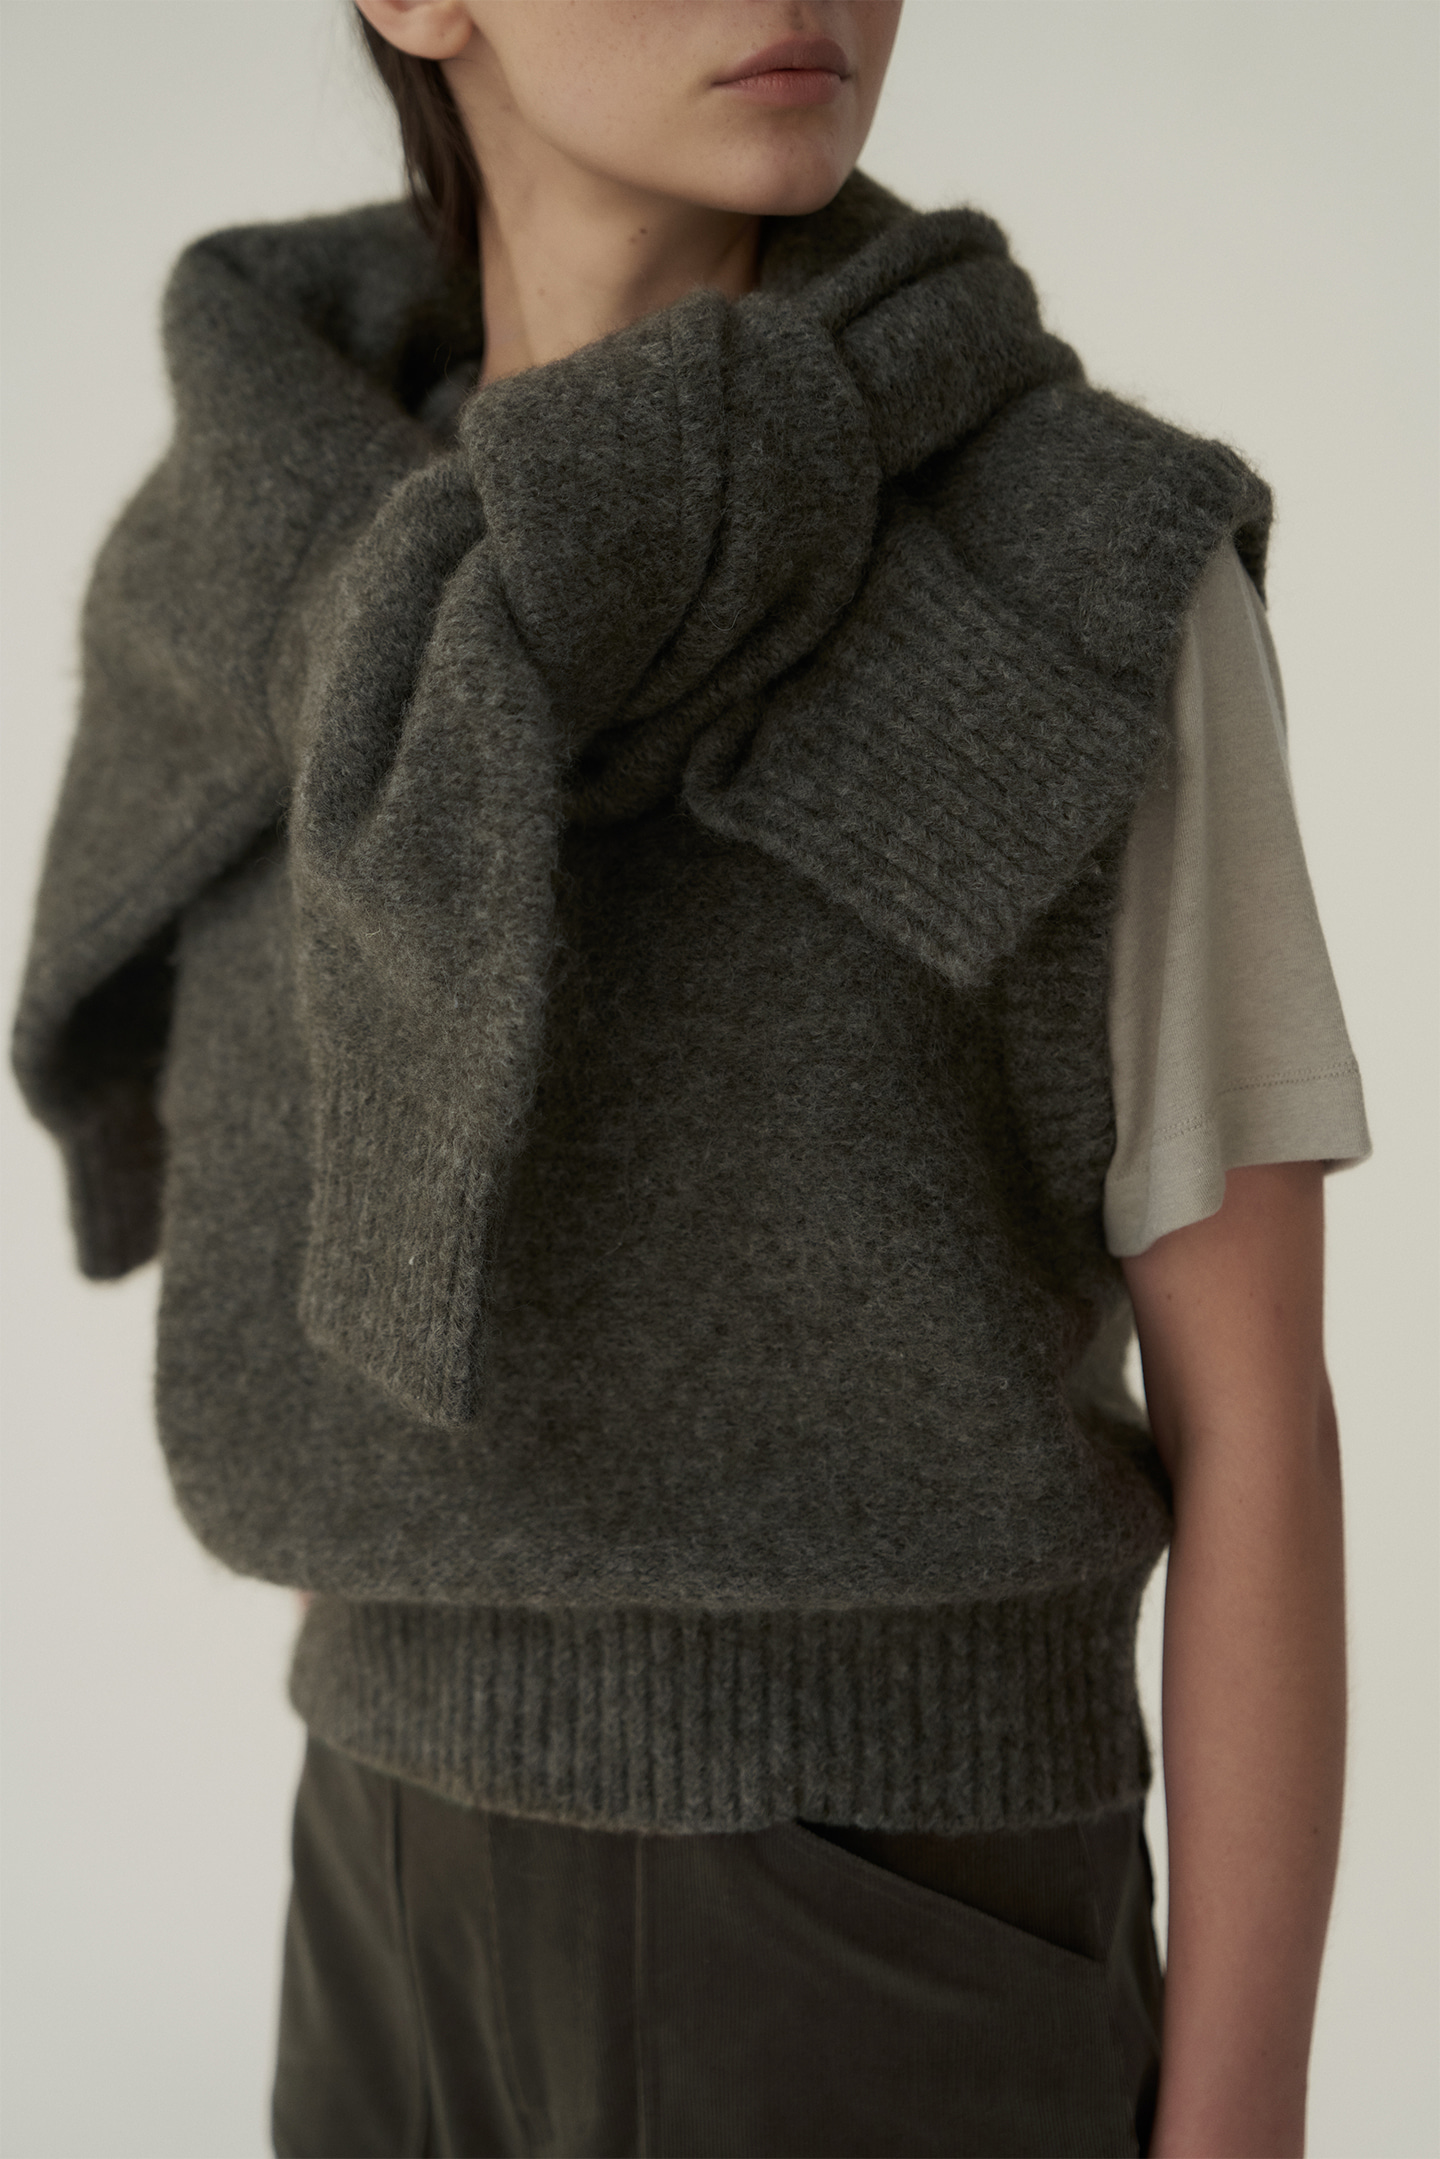 Mohair knit vest (cement khaki)